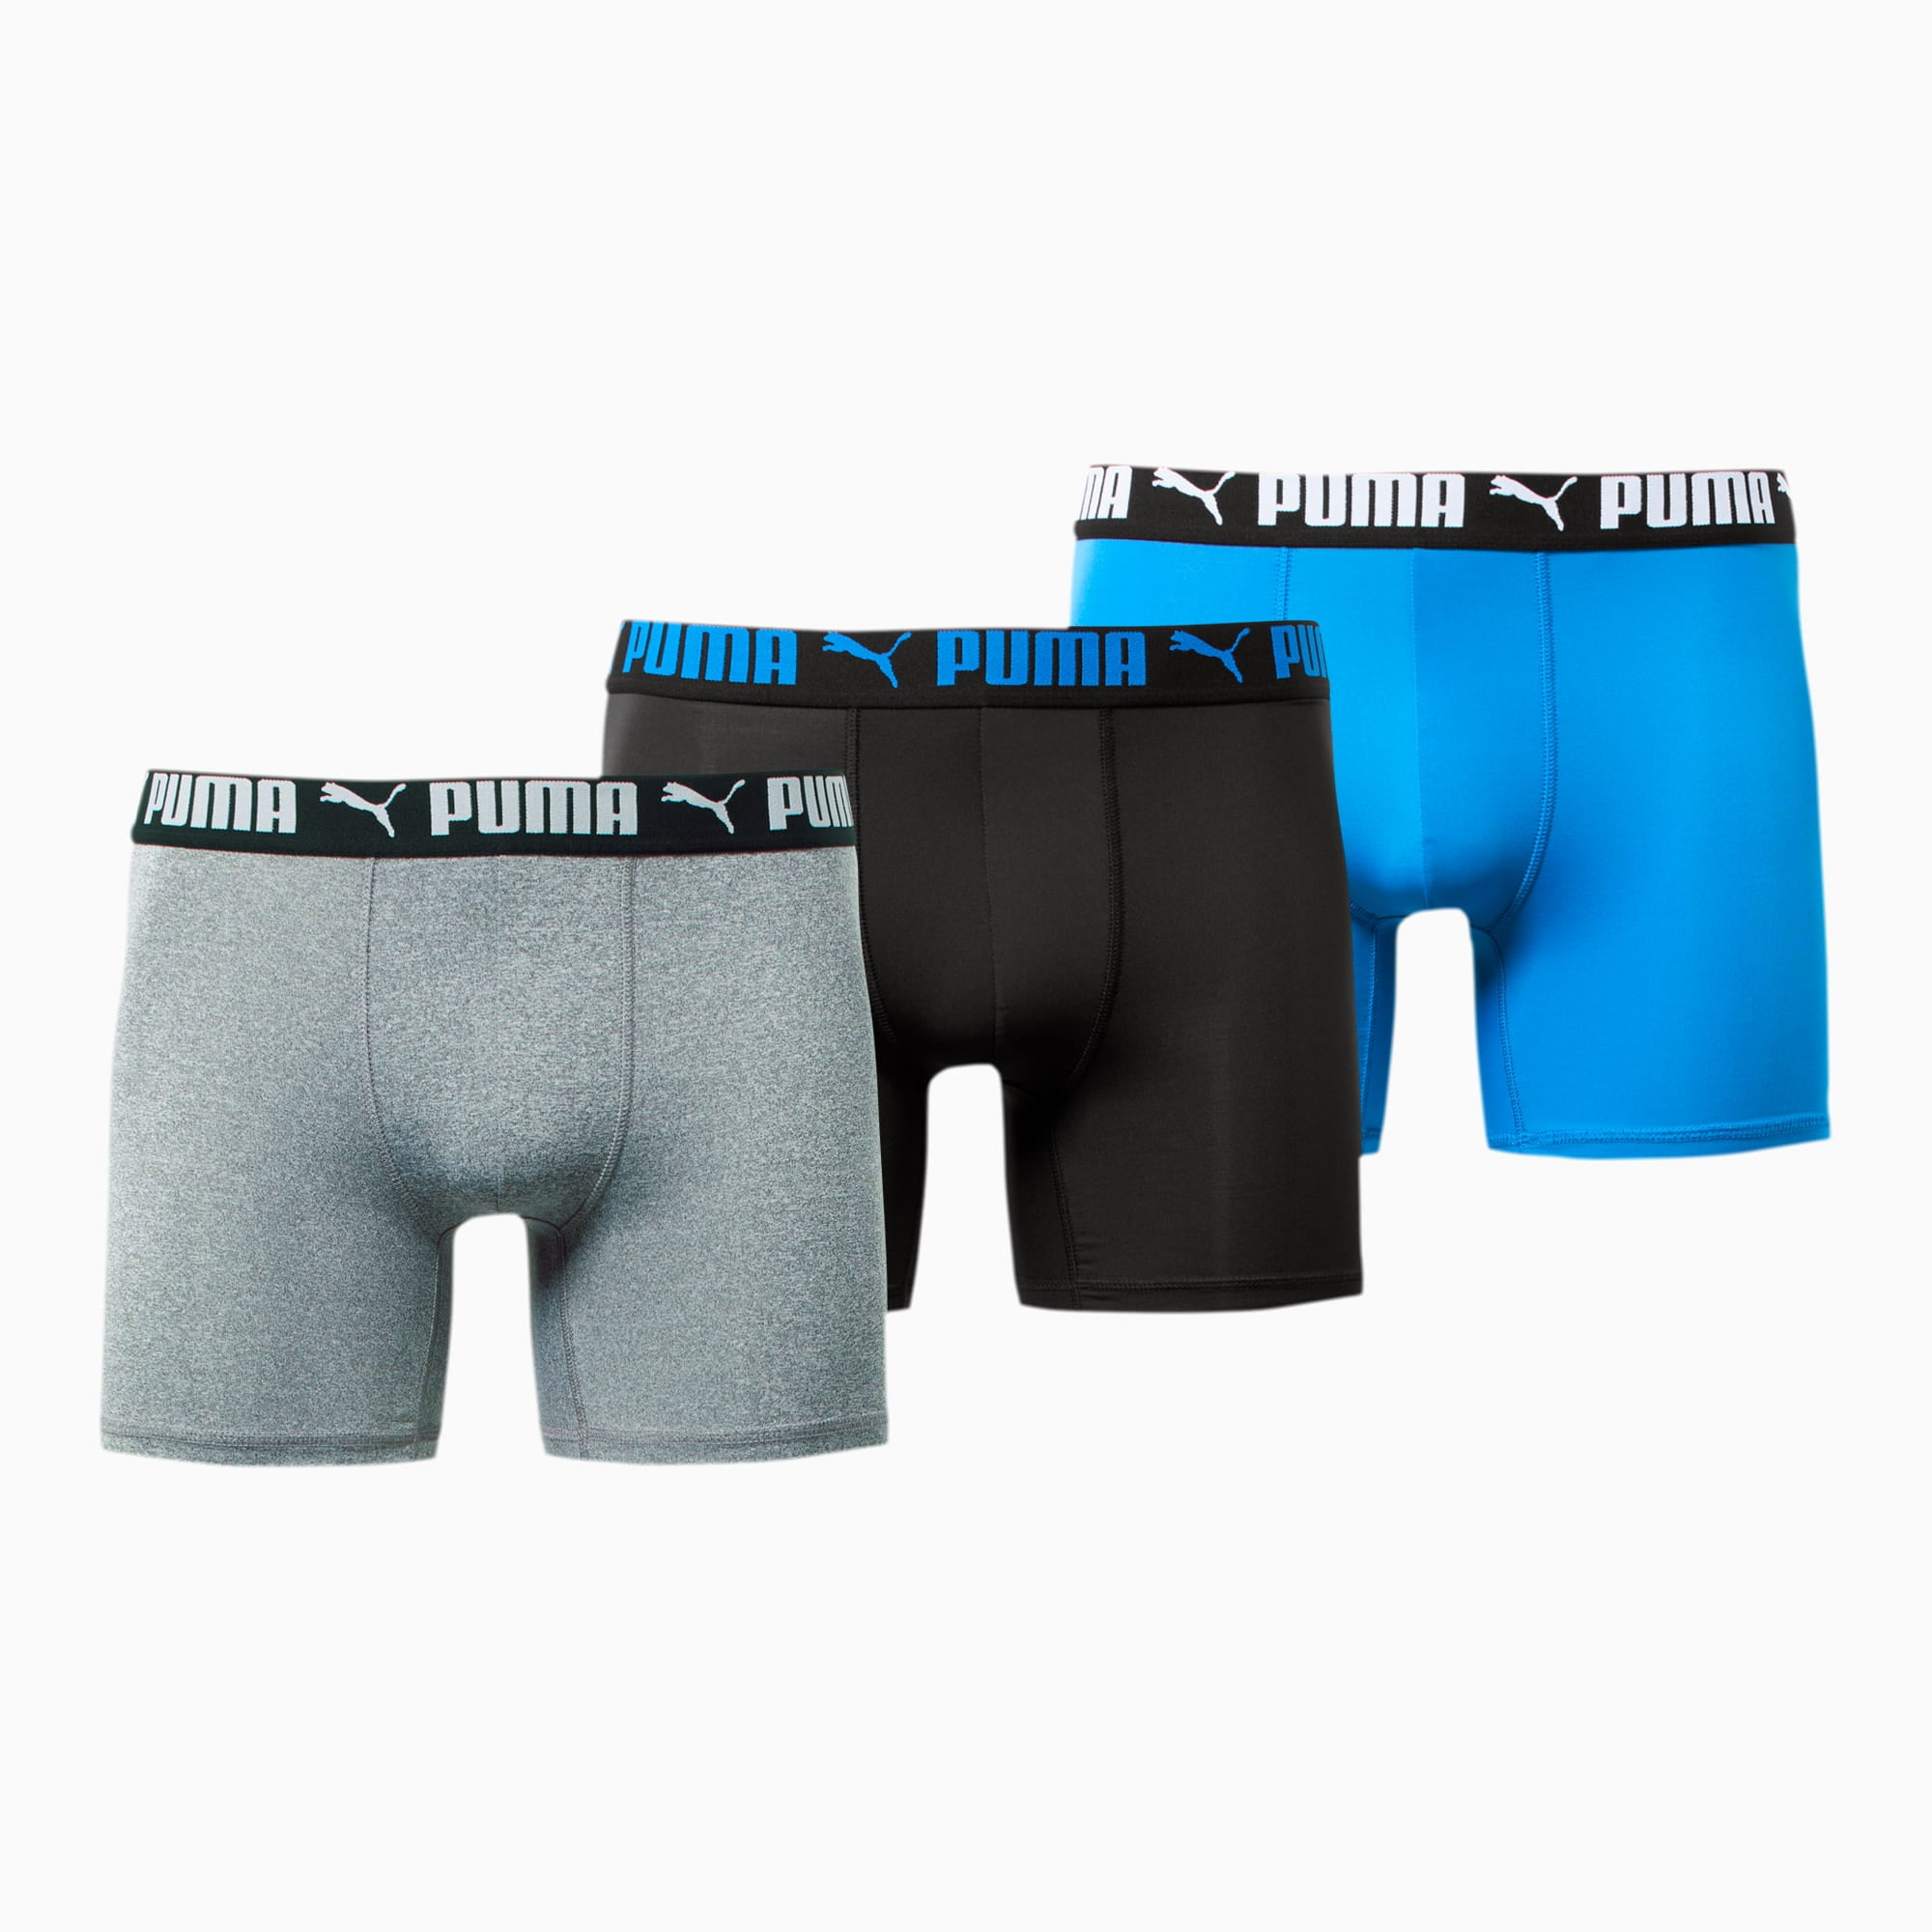 puma brief underwear